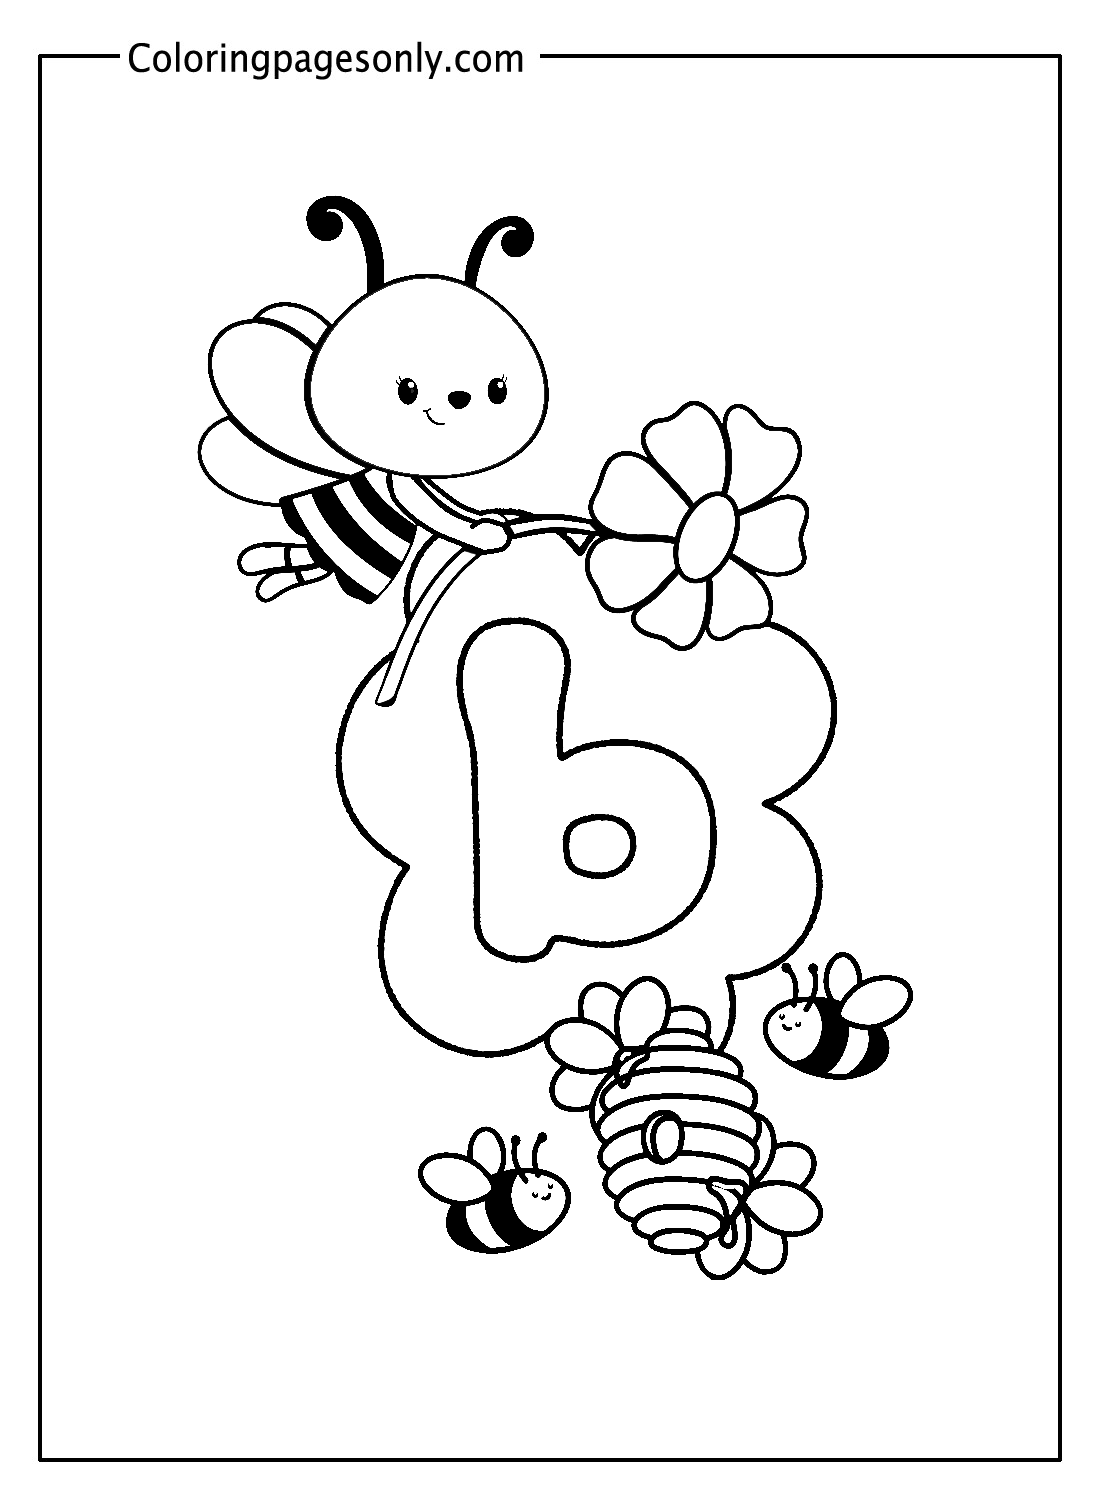 蜜蜂与字母 B 中的字母 b